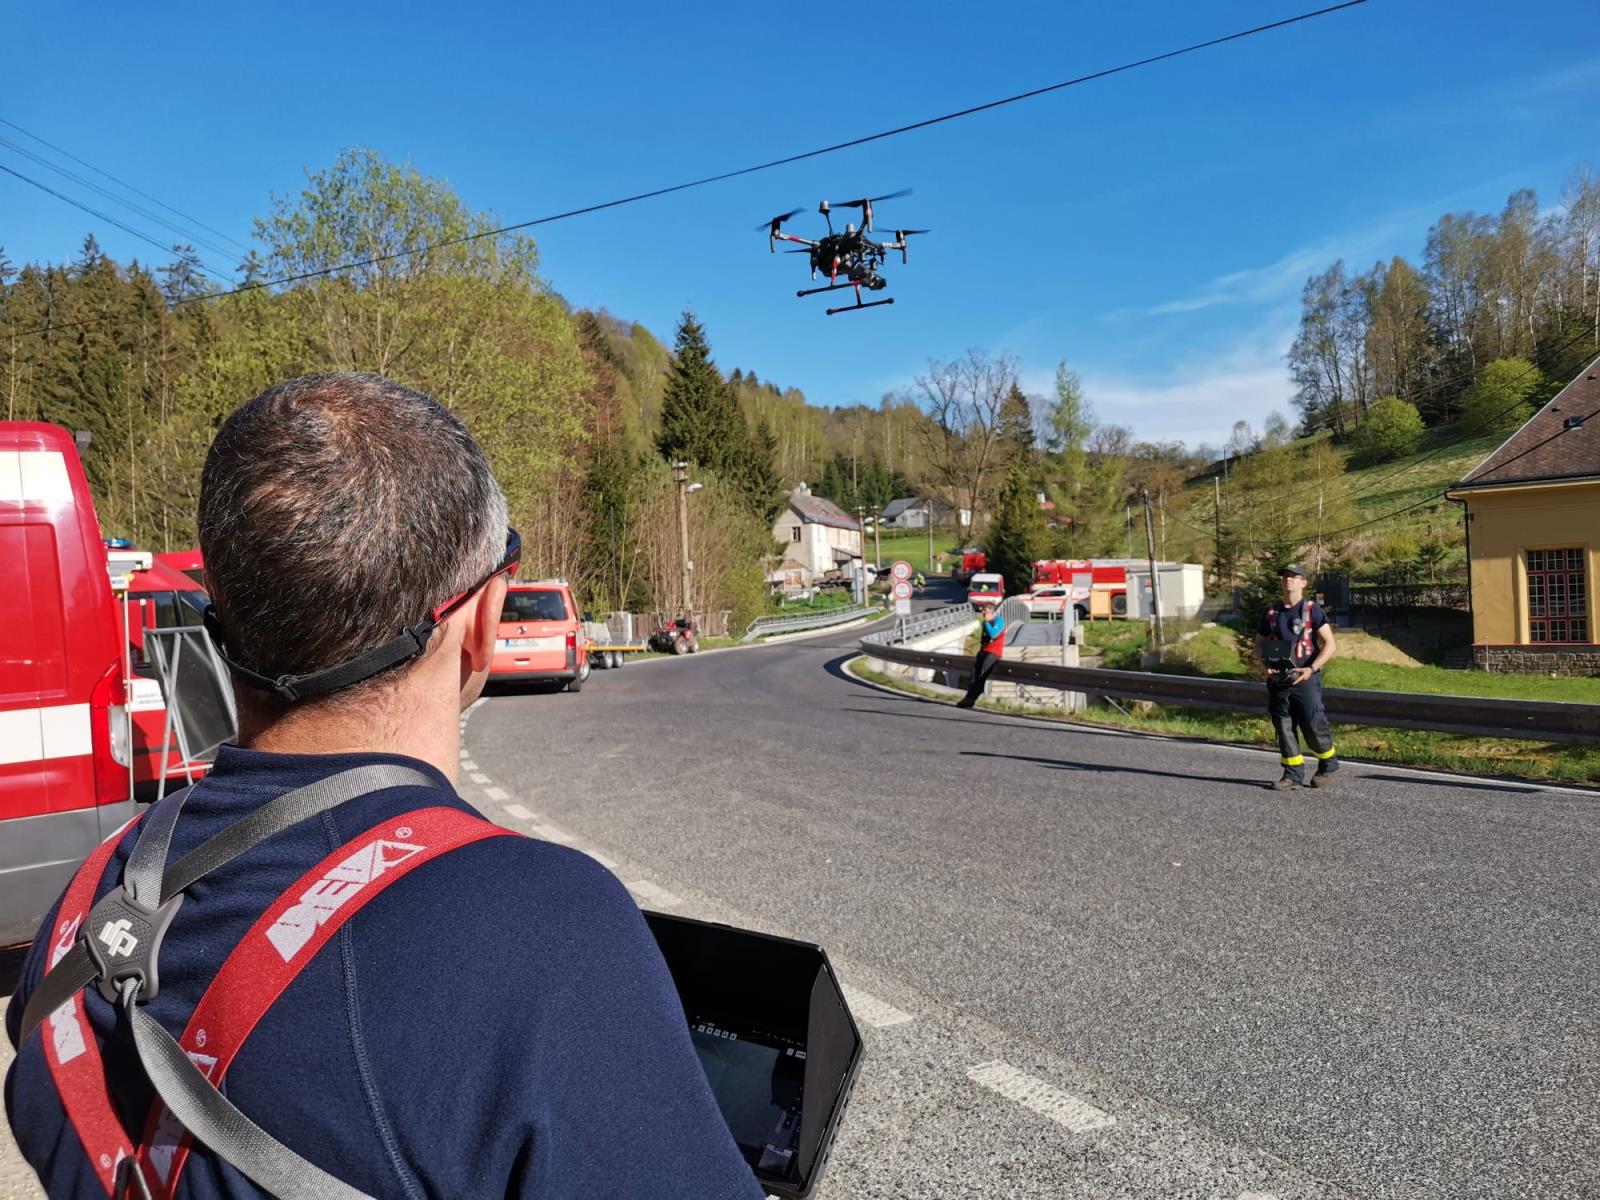 Příslušníci HZS Libereckého kraje během pátrací akce využili hasičské bezpilotní letouny - drony